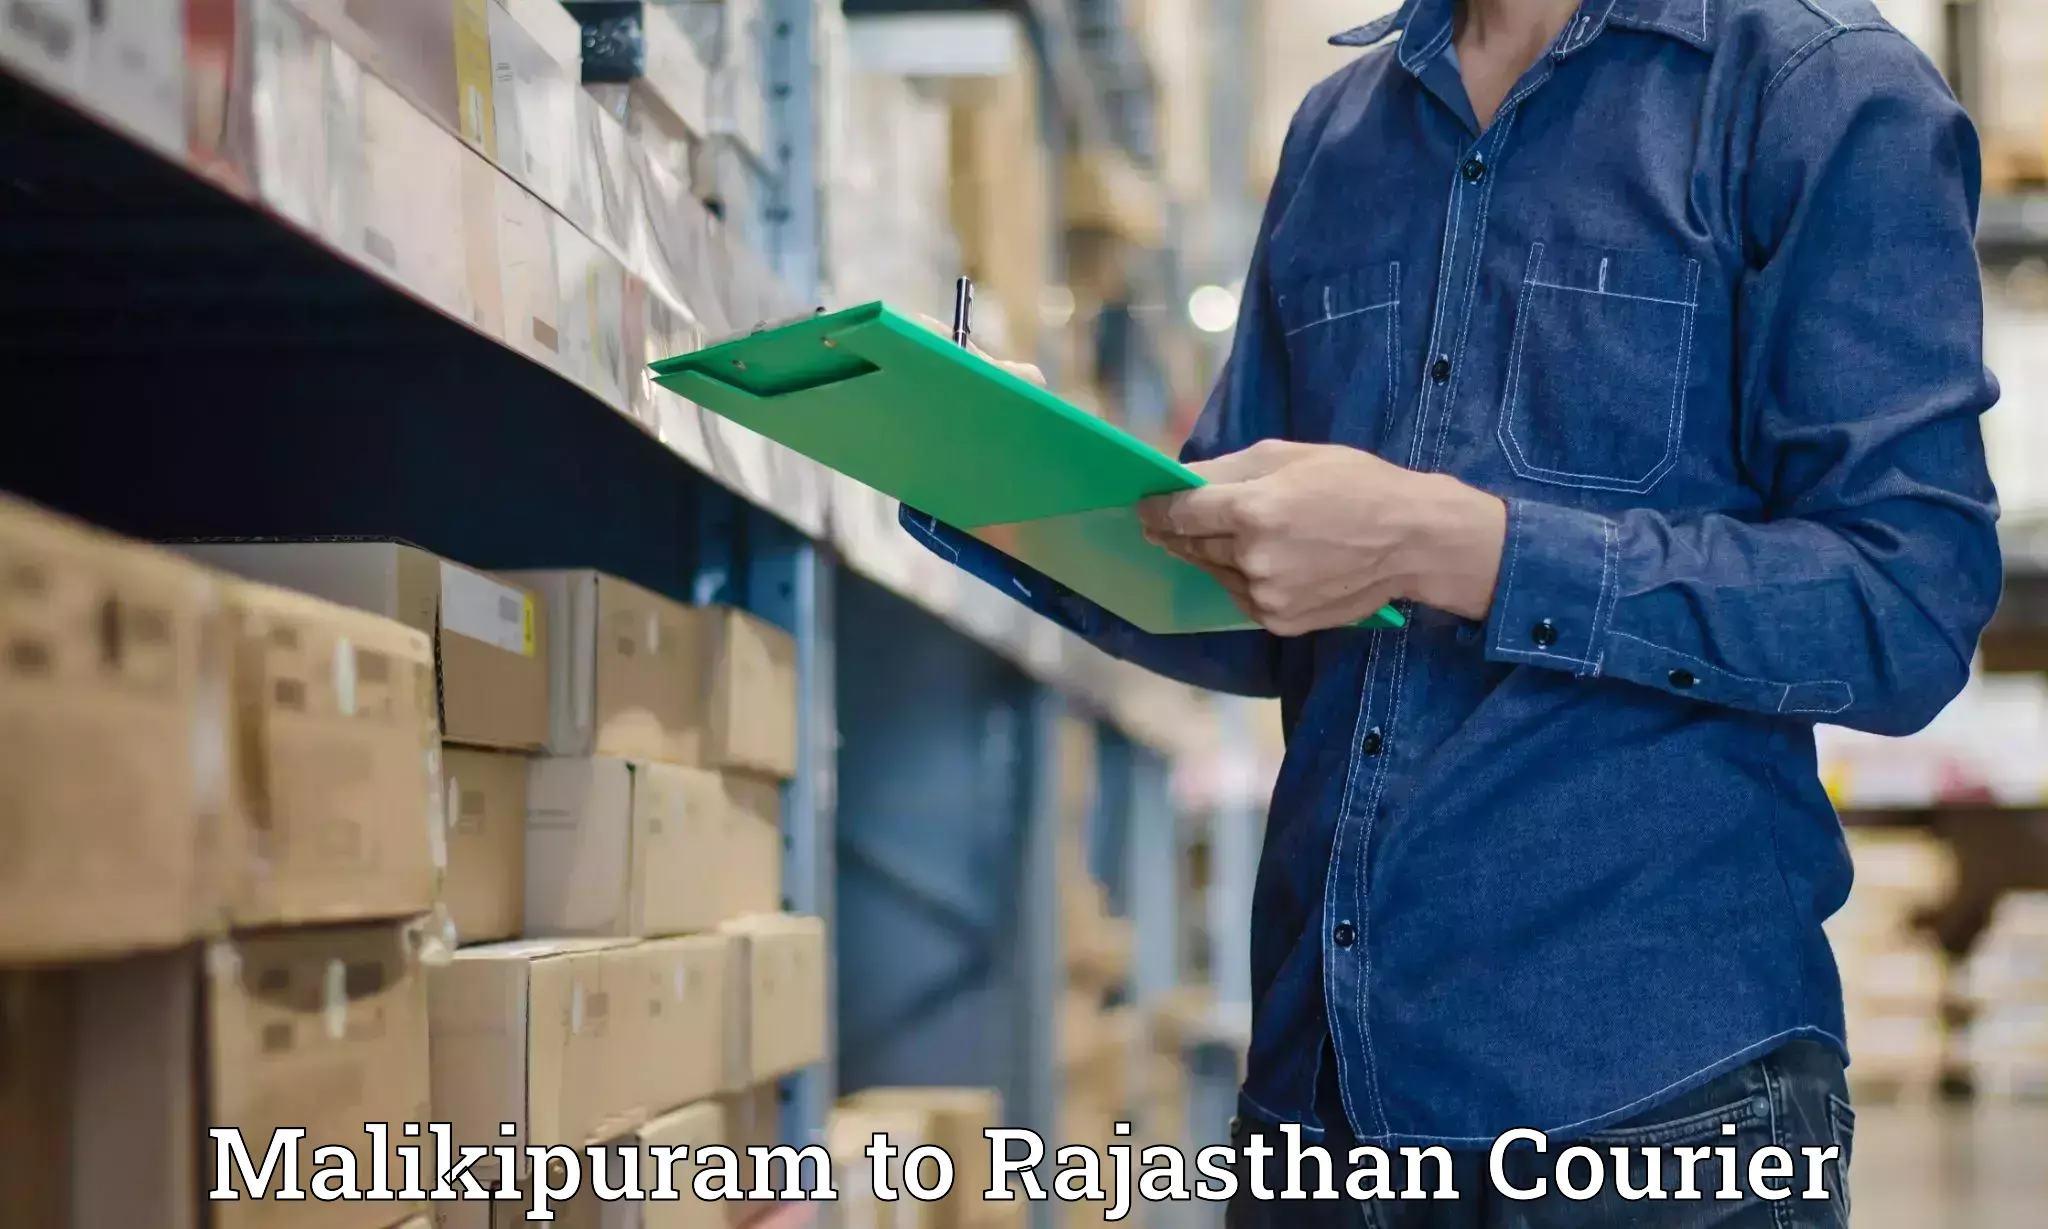 Professional courier handling Malikipuram to Ajeetgarh